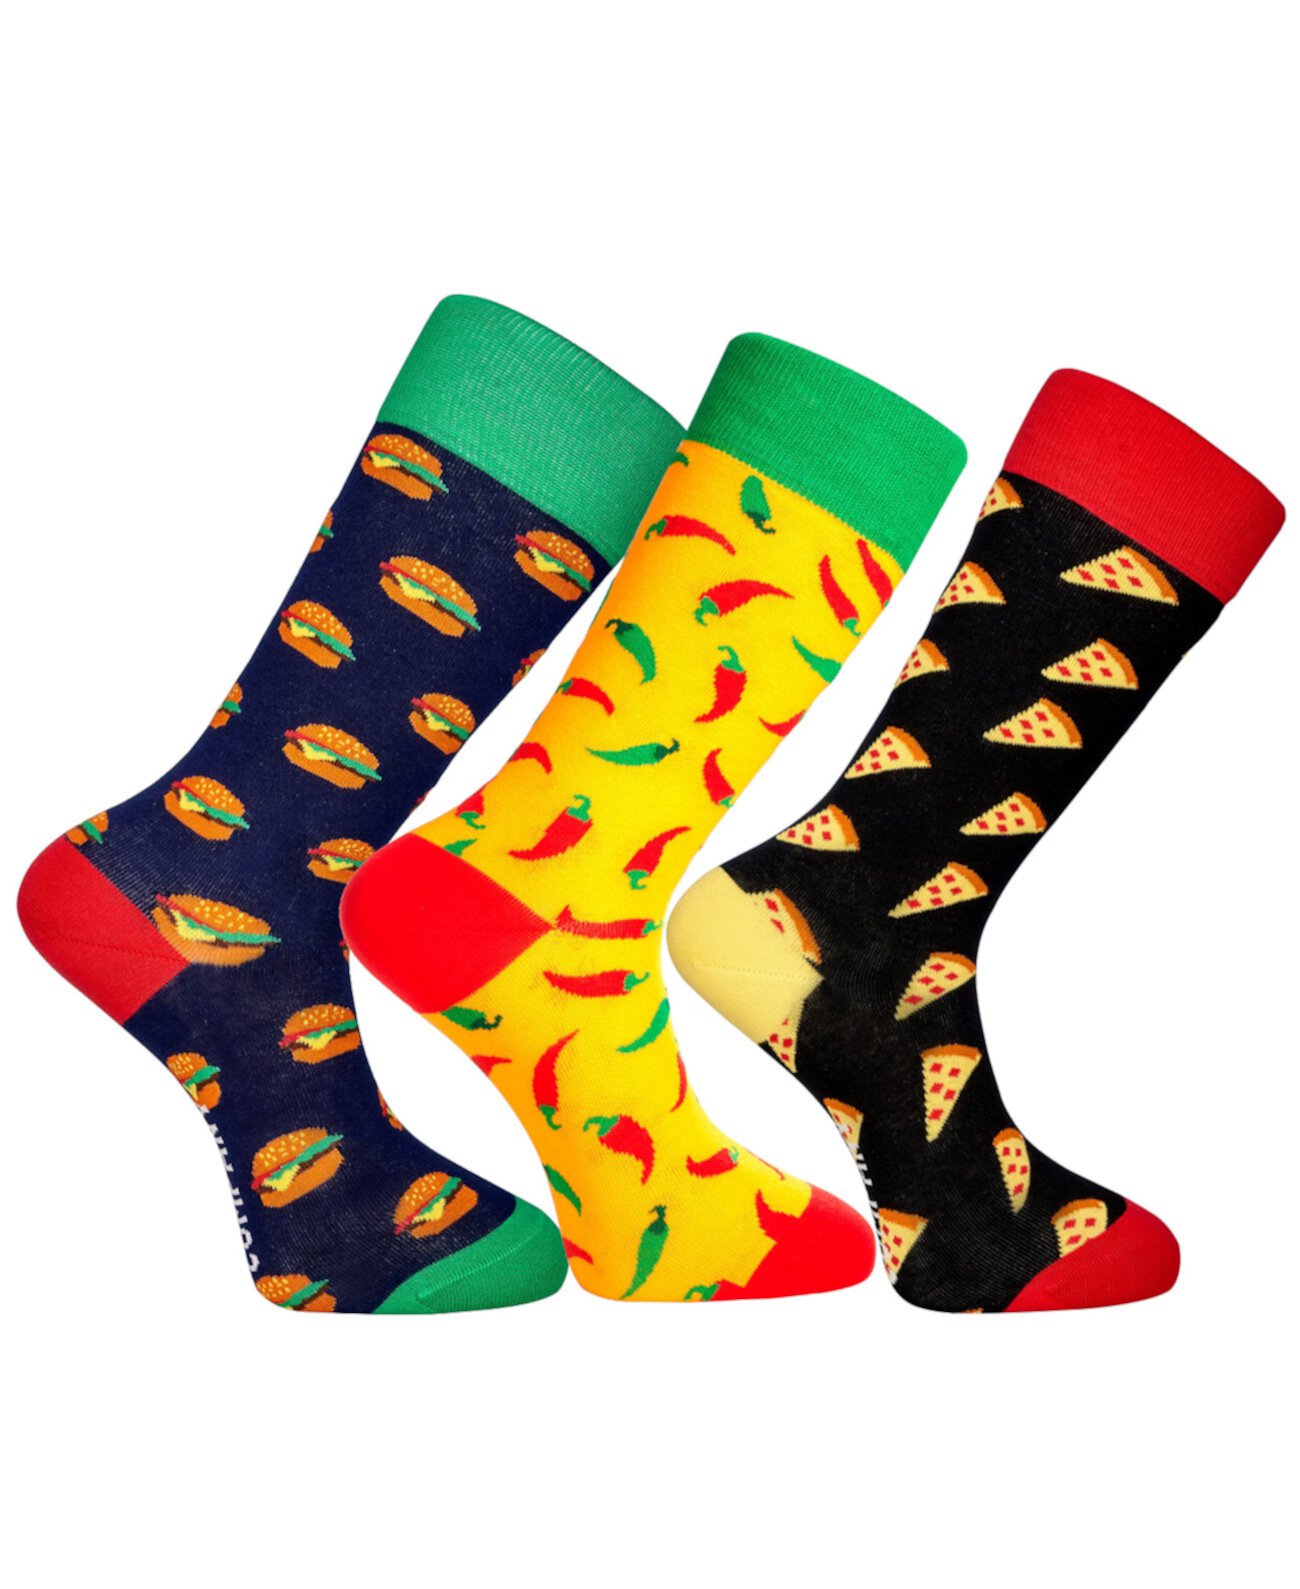 Новинка, набор роскошных мужских носков Houston Crew, забавный, разноцветный, с бесшовным мыском, 3 шт. Love Sock Company